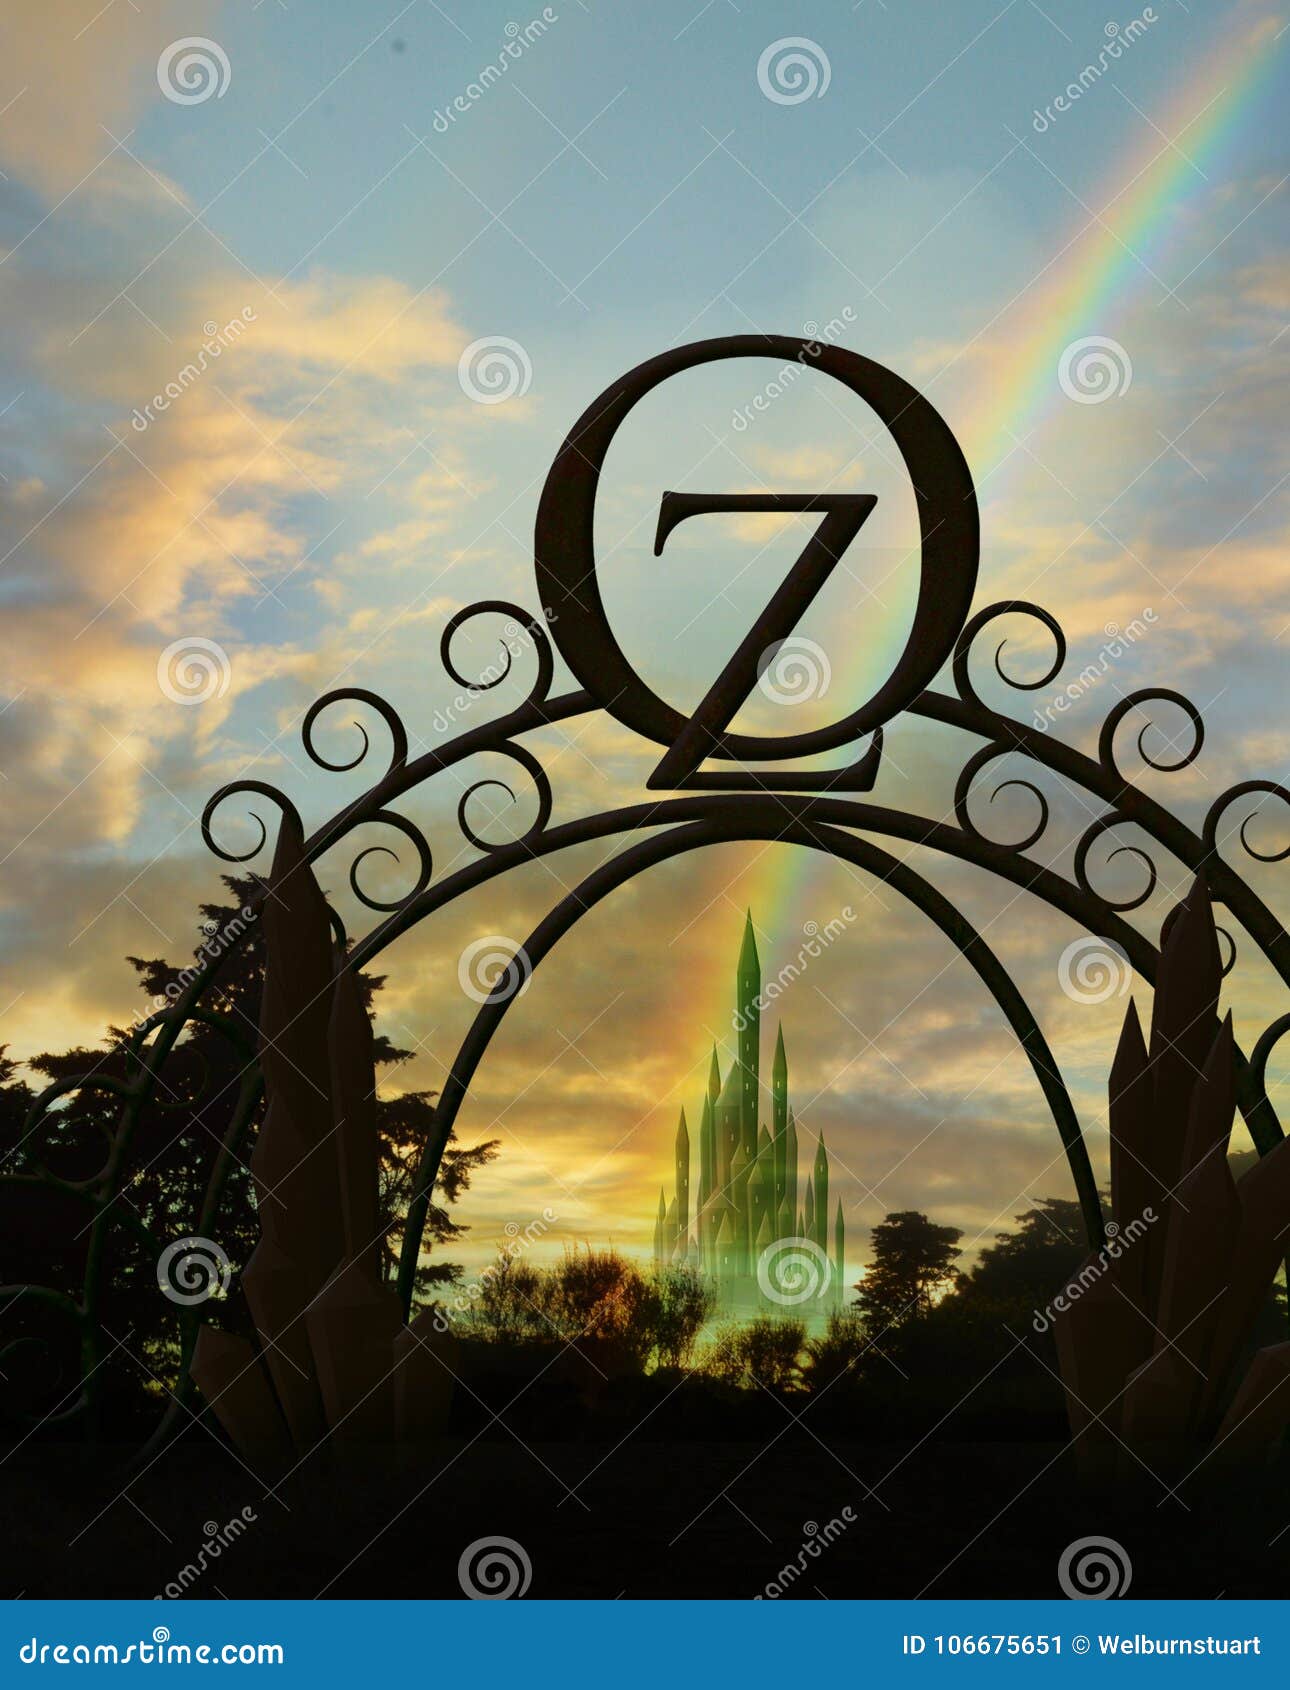 oz gateway with rainbow